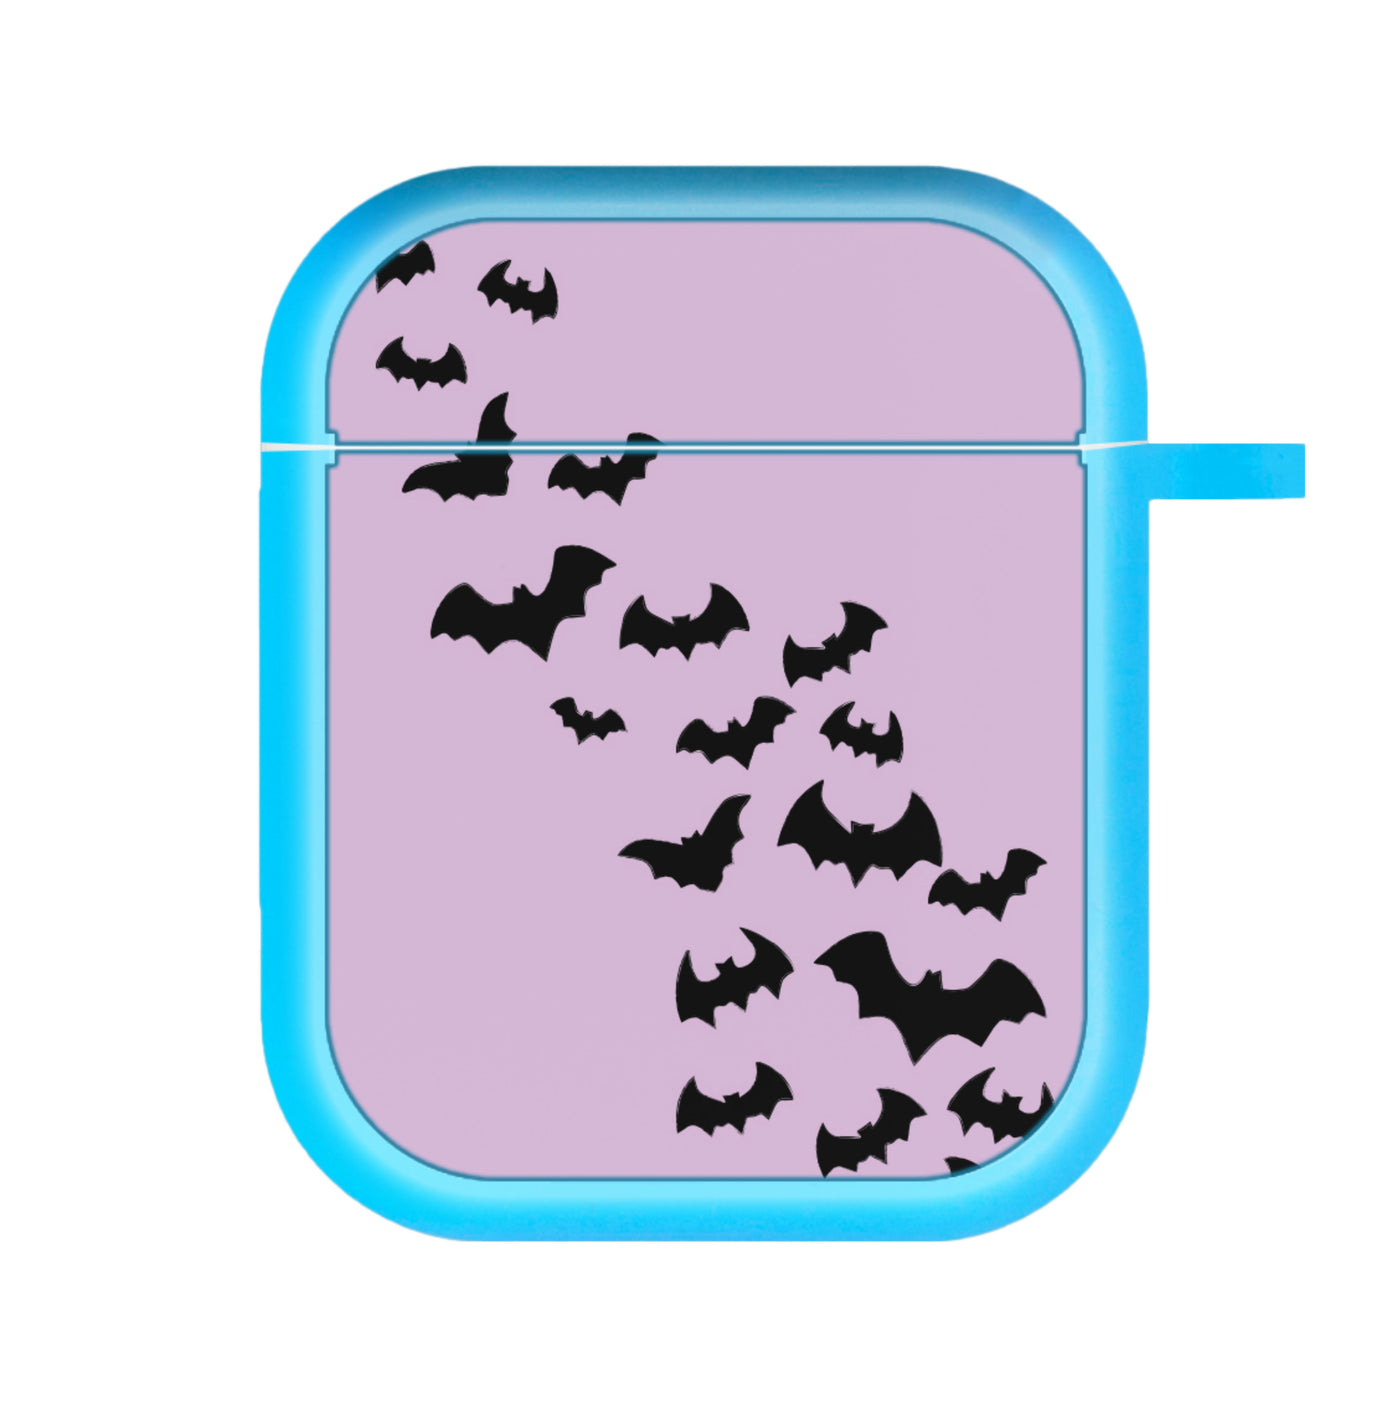 Bats - Halloween AirPods Case